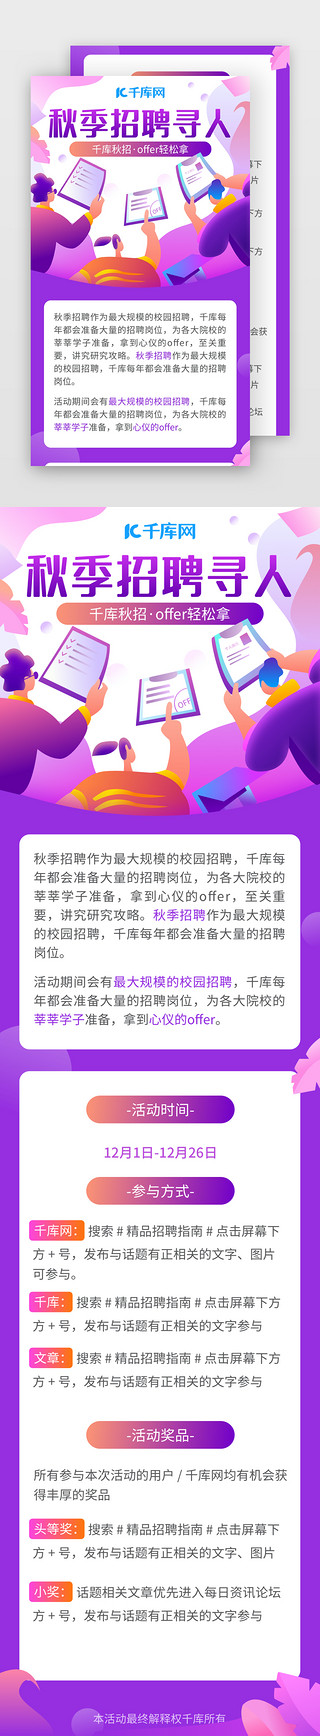 紫色时尚UI设计素材_紫色时尚秋季招聘攻略H5活动页